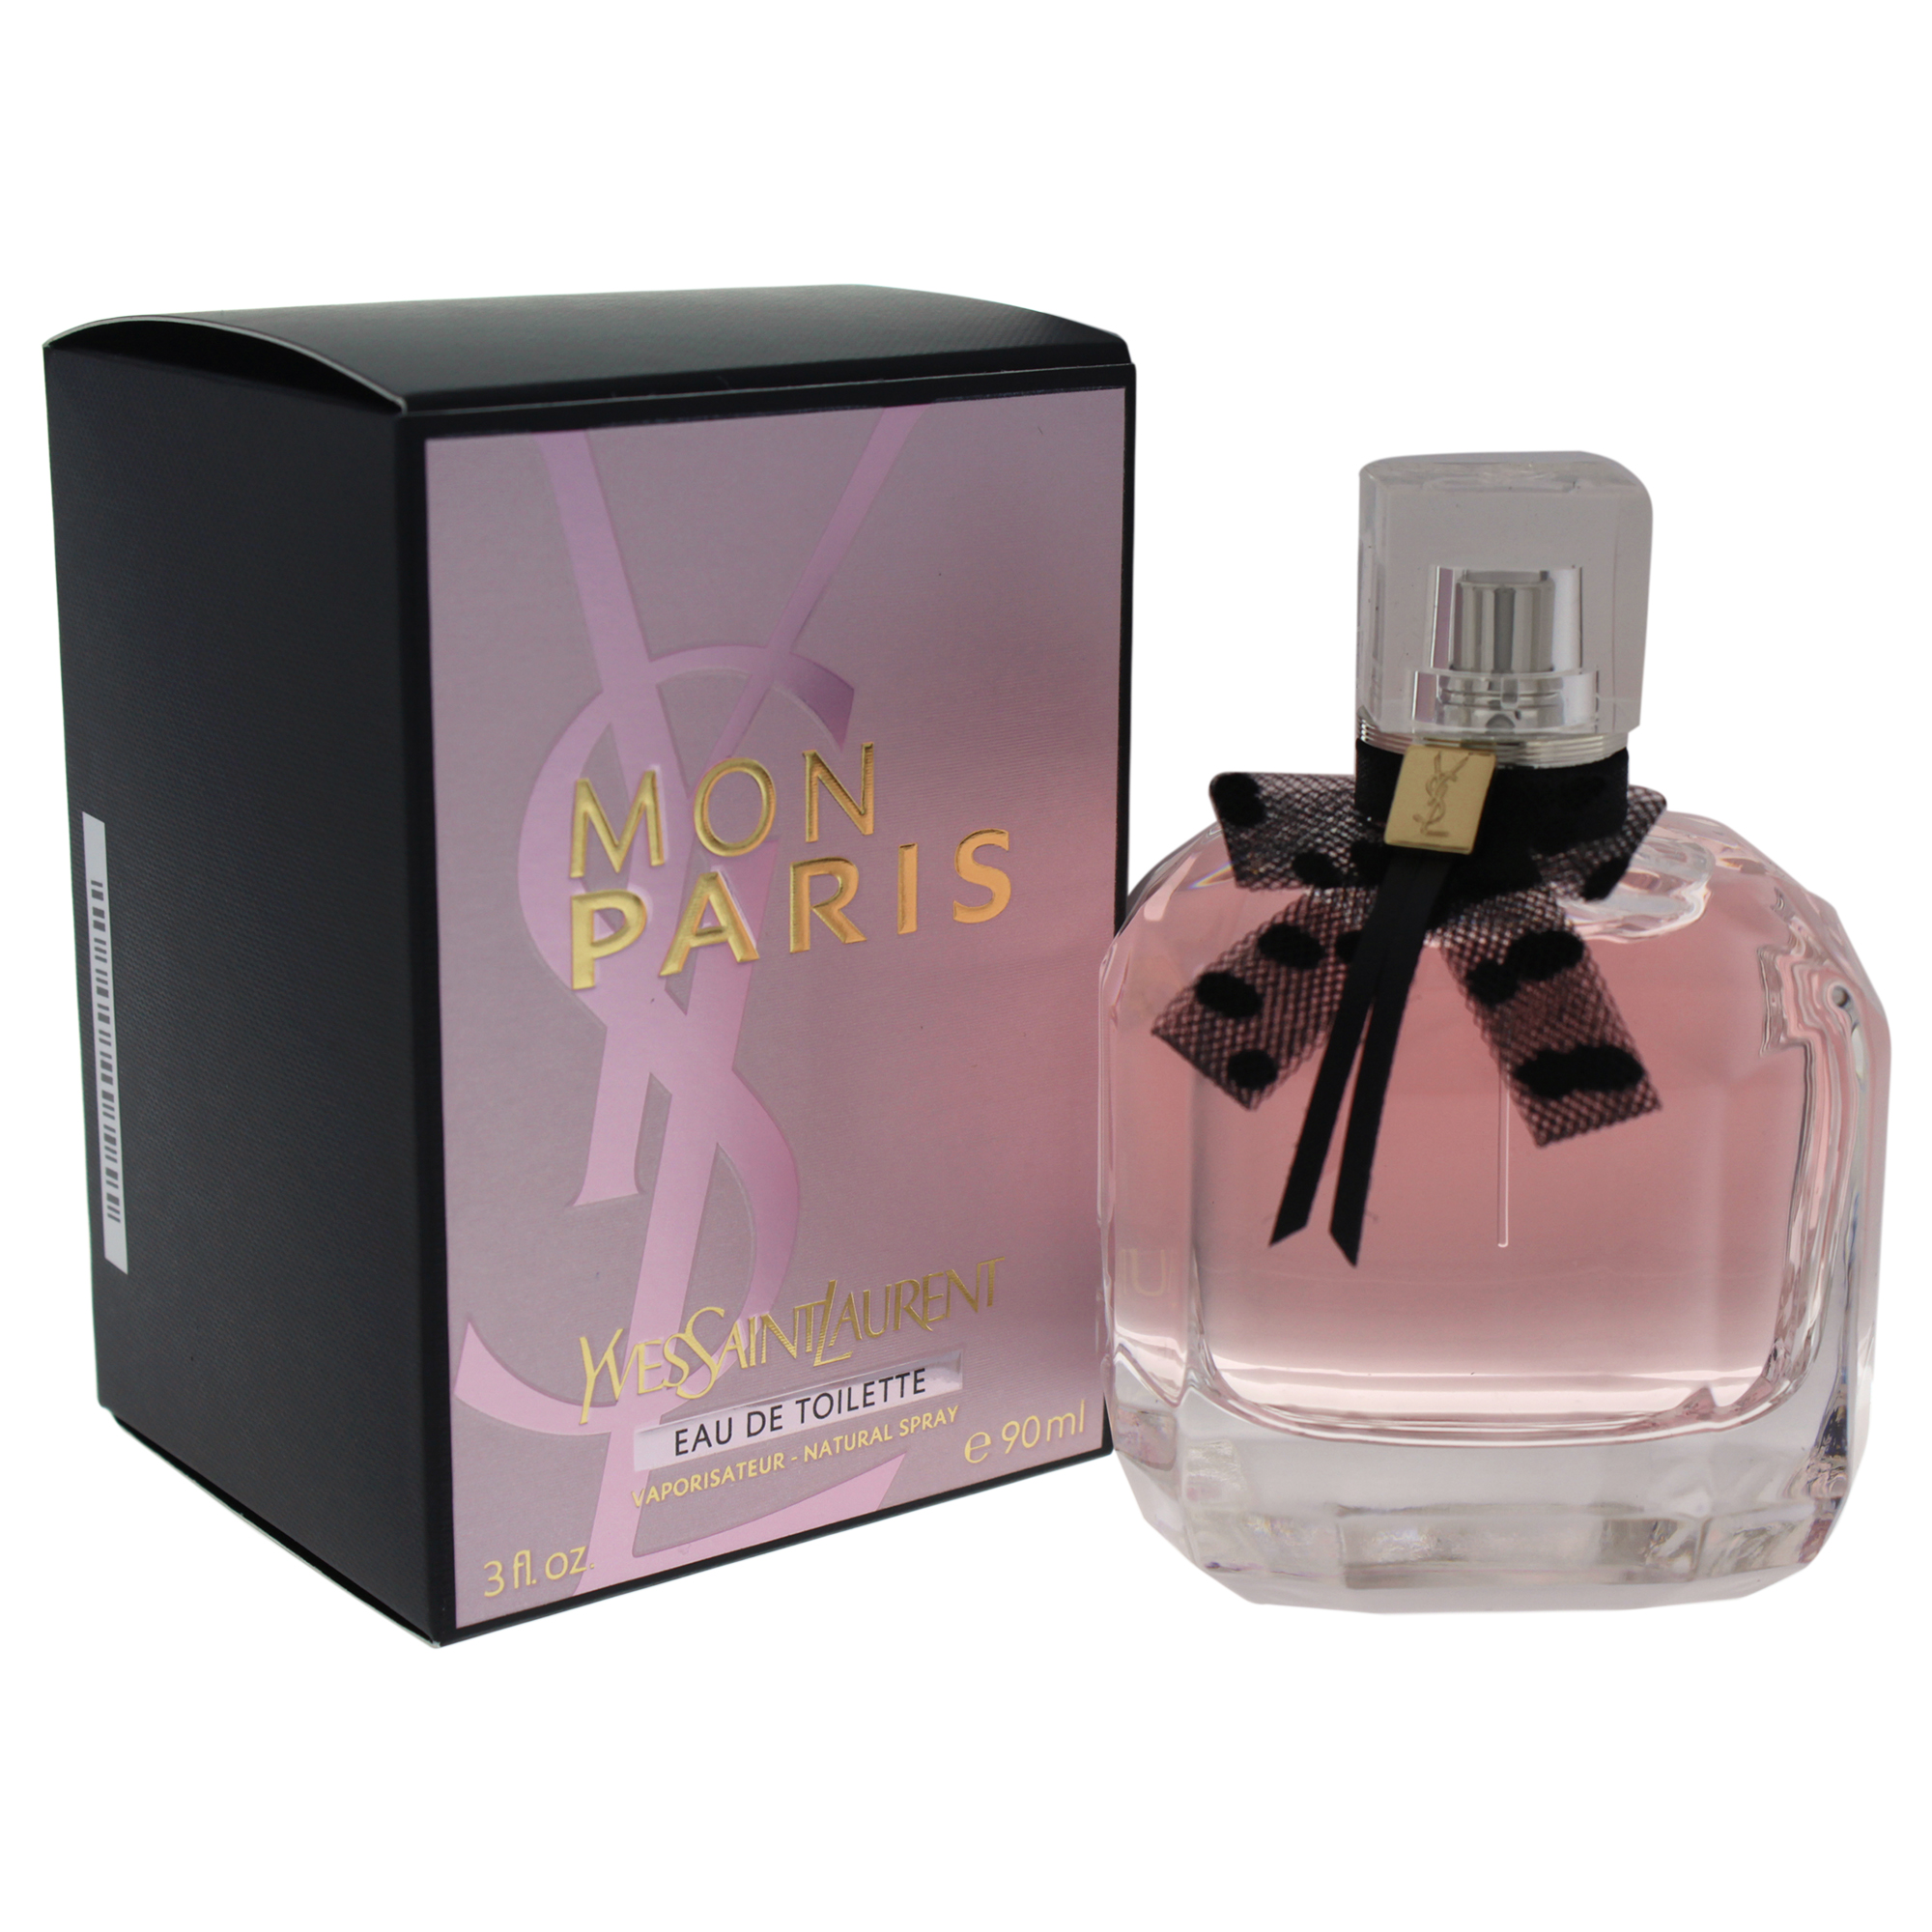 Yves Saint Laurent Mon Paris Eau de Toilette Perfume for Women, 3 Oz Full Size - image 2 of 2